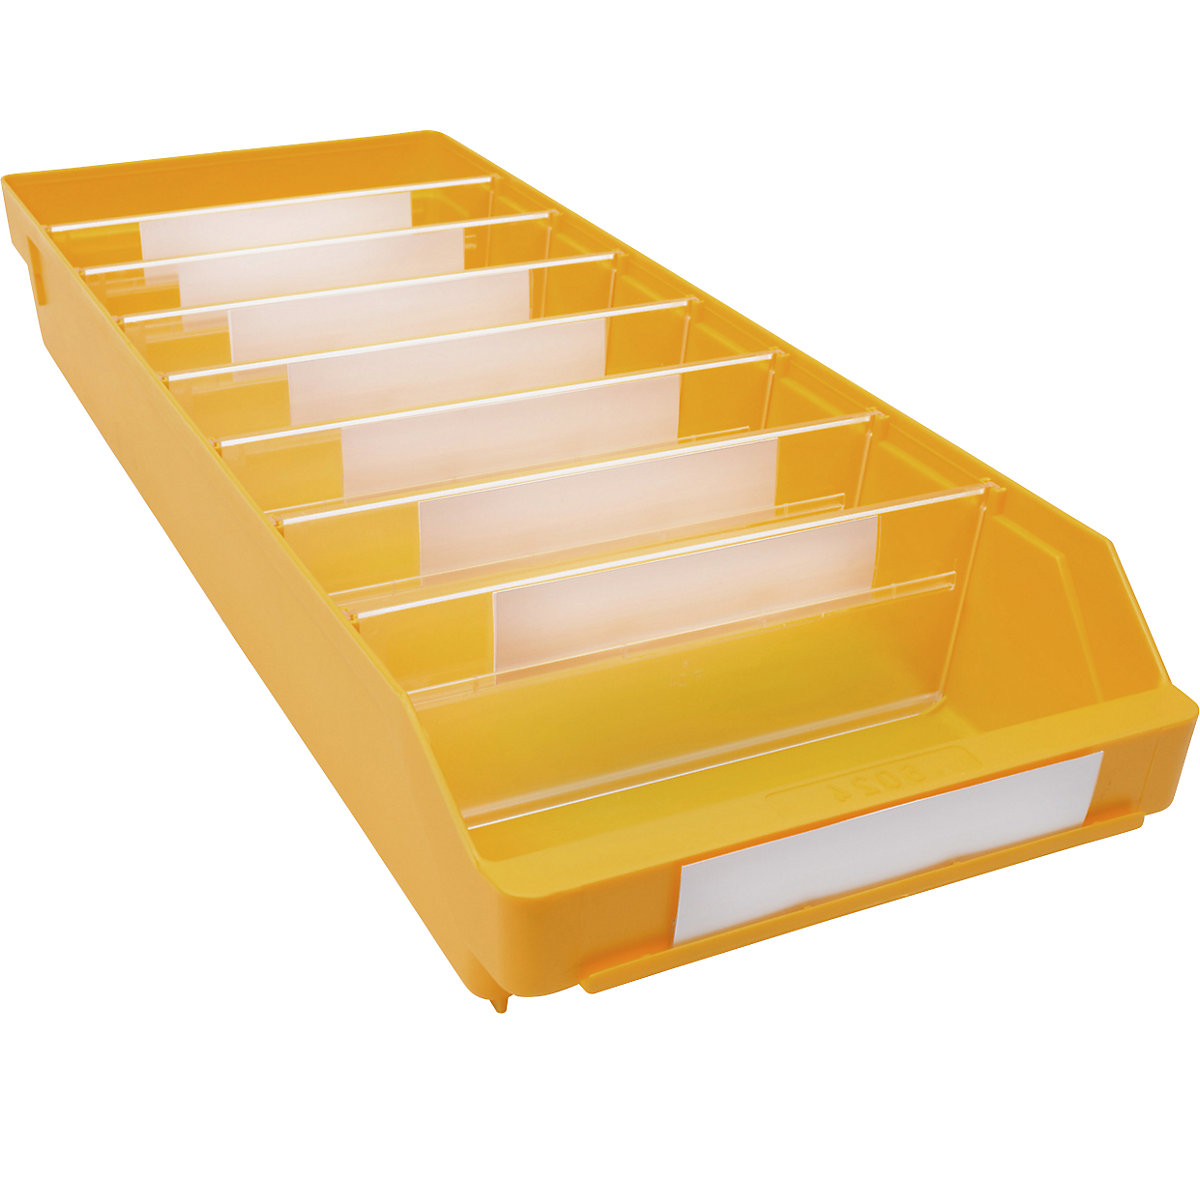 Bac de stockage en polypropylène résistant aux chocs – STEMO, coloris jaune, L x l x h 600 x 240 x 95 mm, lot de 15-16